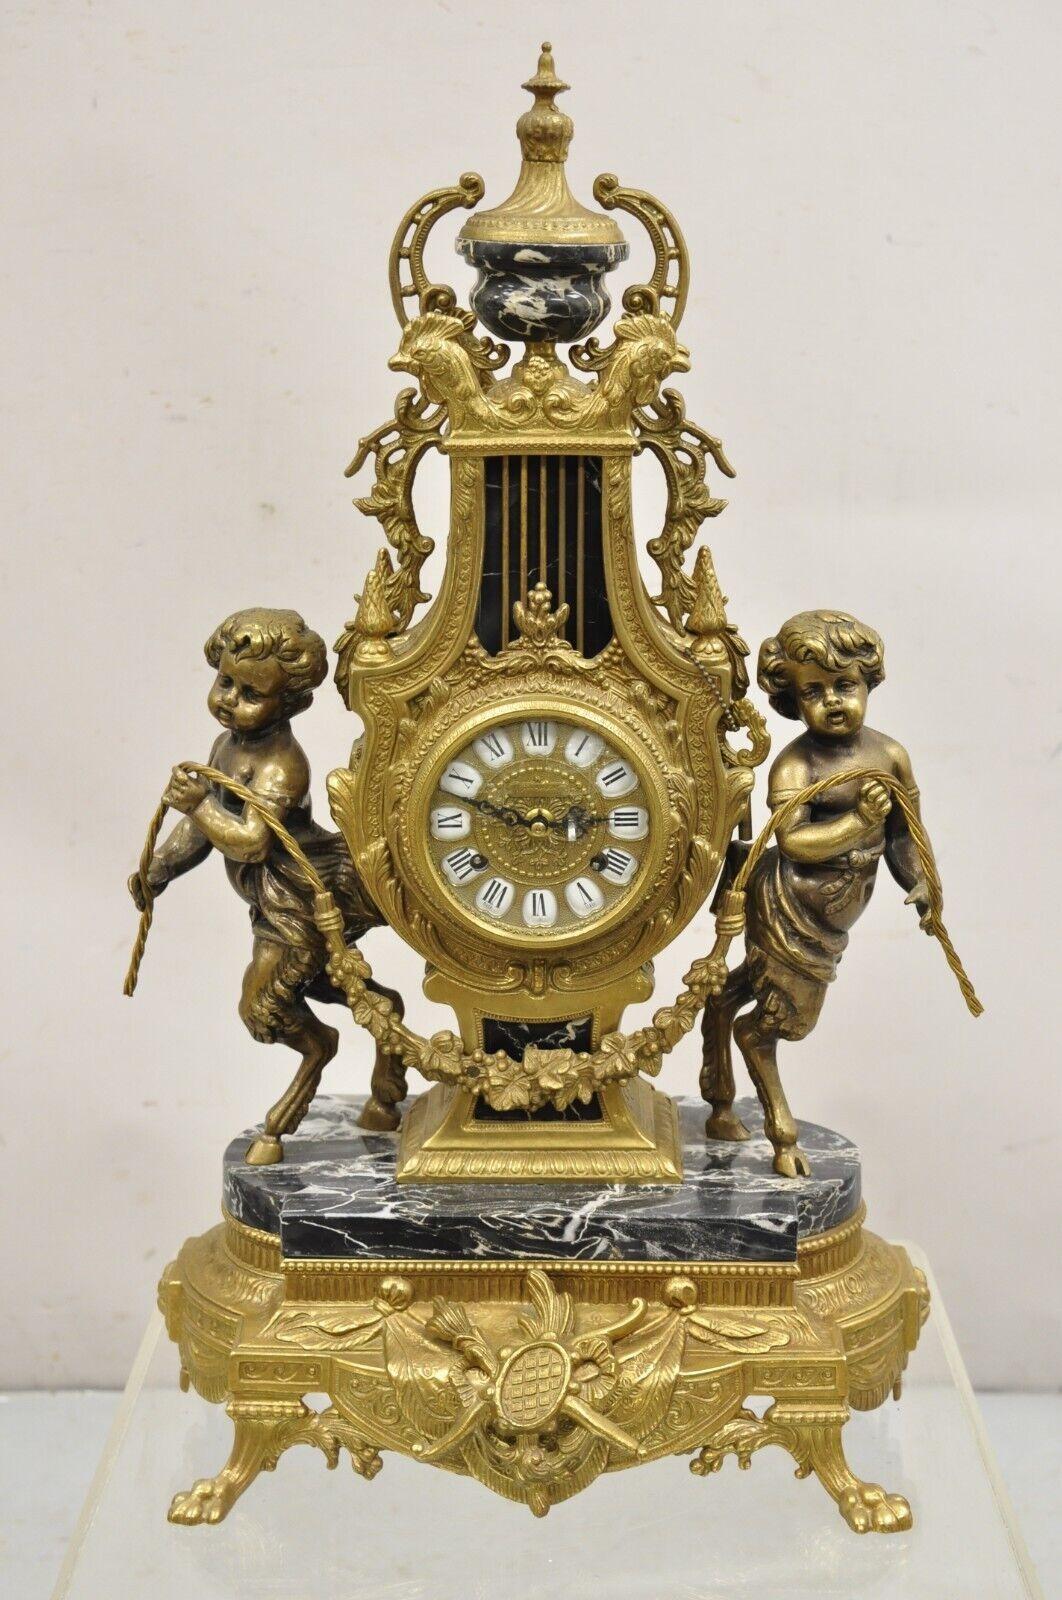 Vintage Französisch Louis XV Stil Brevetatto Italien Messing & Marmor Figural Clock Set - 3 Pc Set. Der Artikel besteht aus einer verzierten figuralen Uhr mit Huf-Fuß-Perlen und schwarzen Marmor-Akzenten, 2 verzierten Kerzenleuchtern mit 7